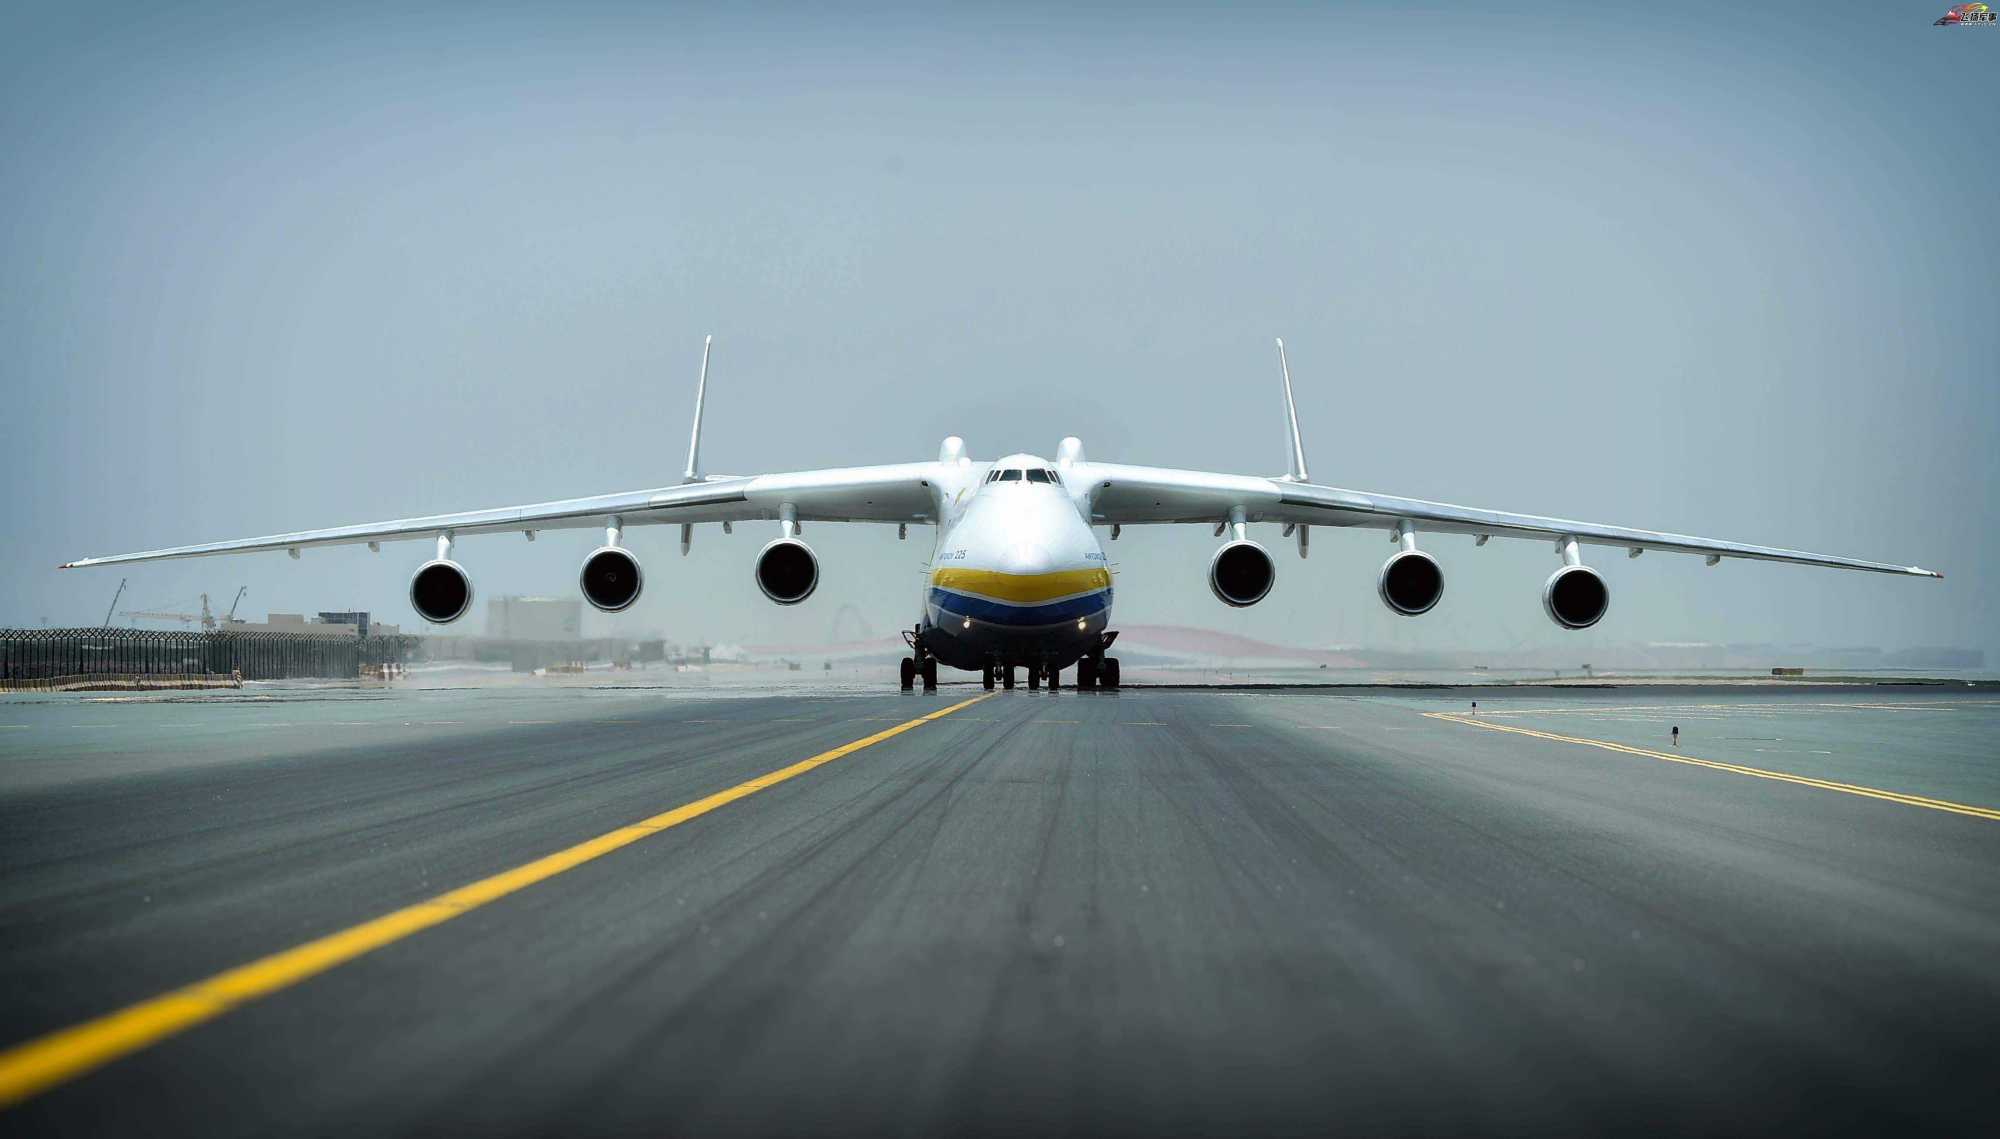 全球最大的飞机,32个轮子640吨起飞重量,运输能力有多强?